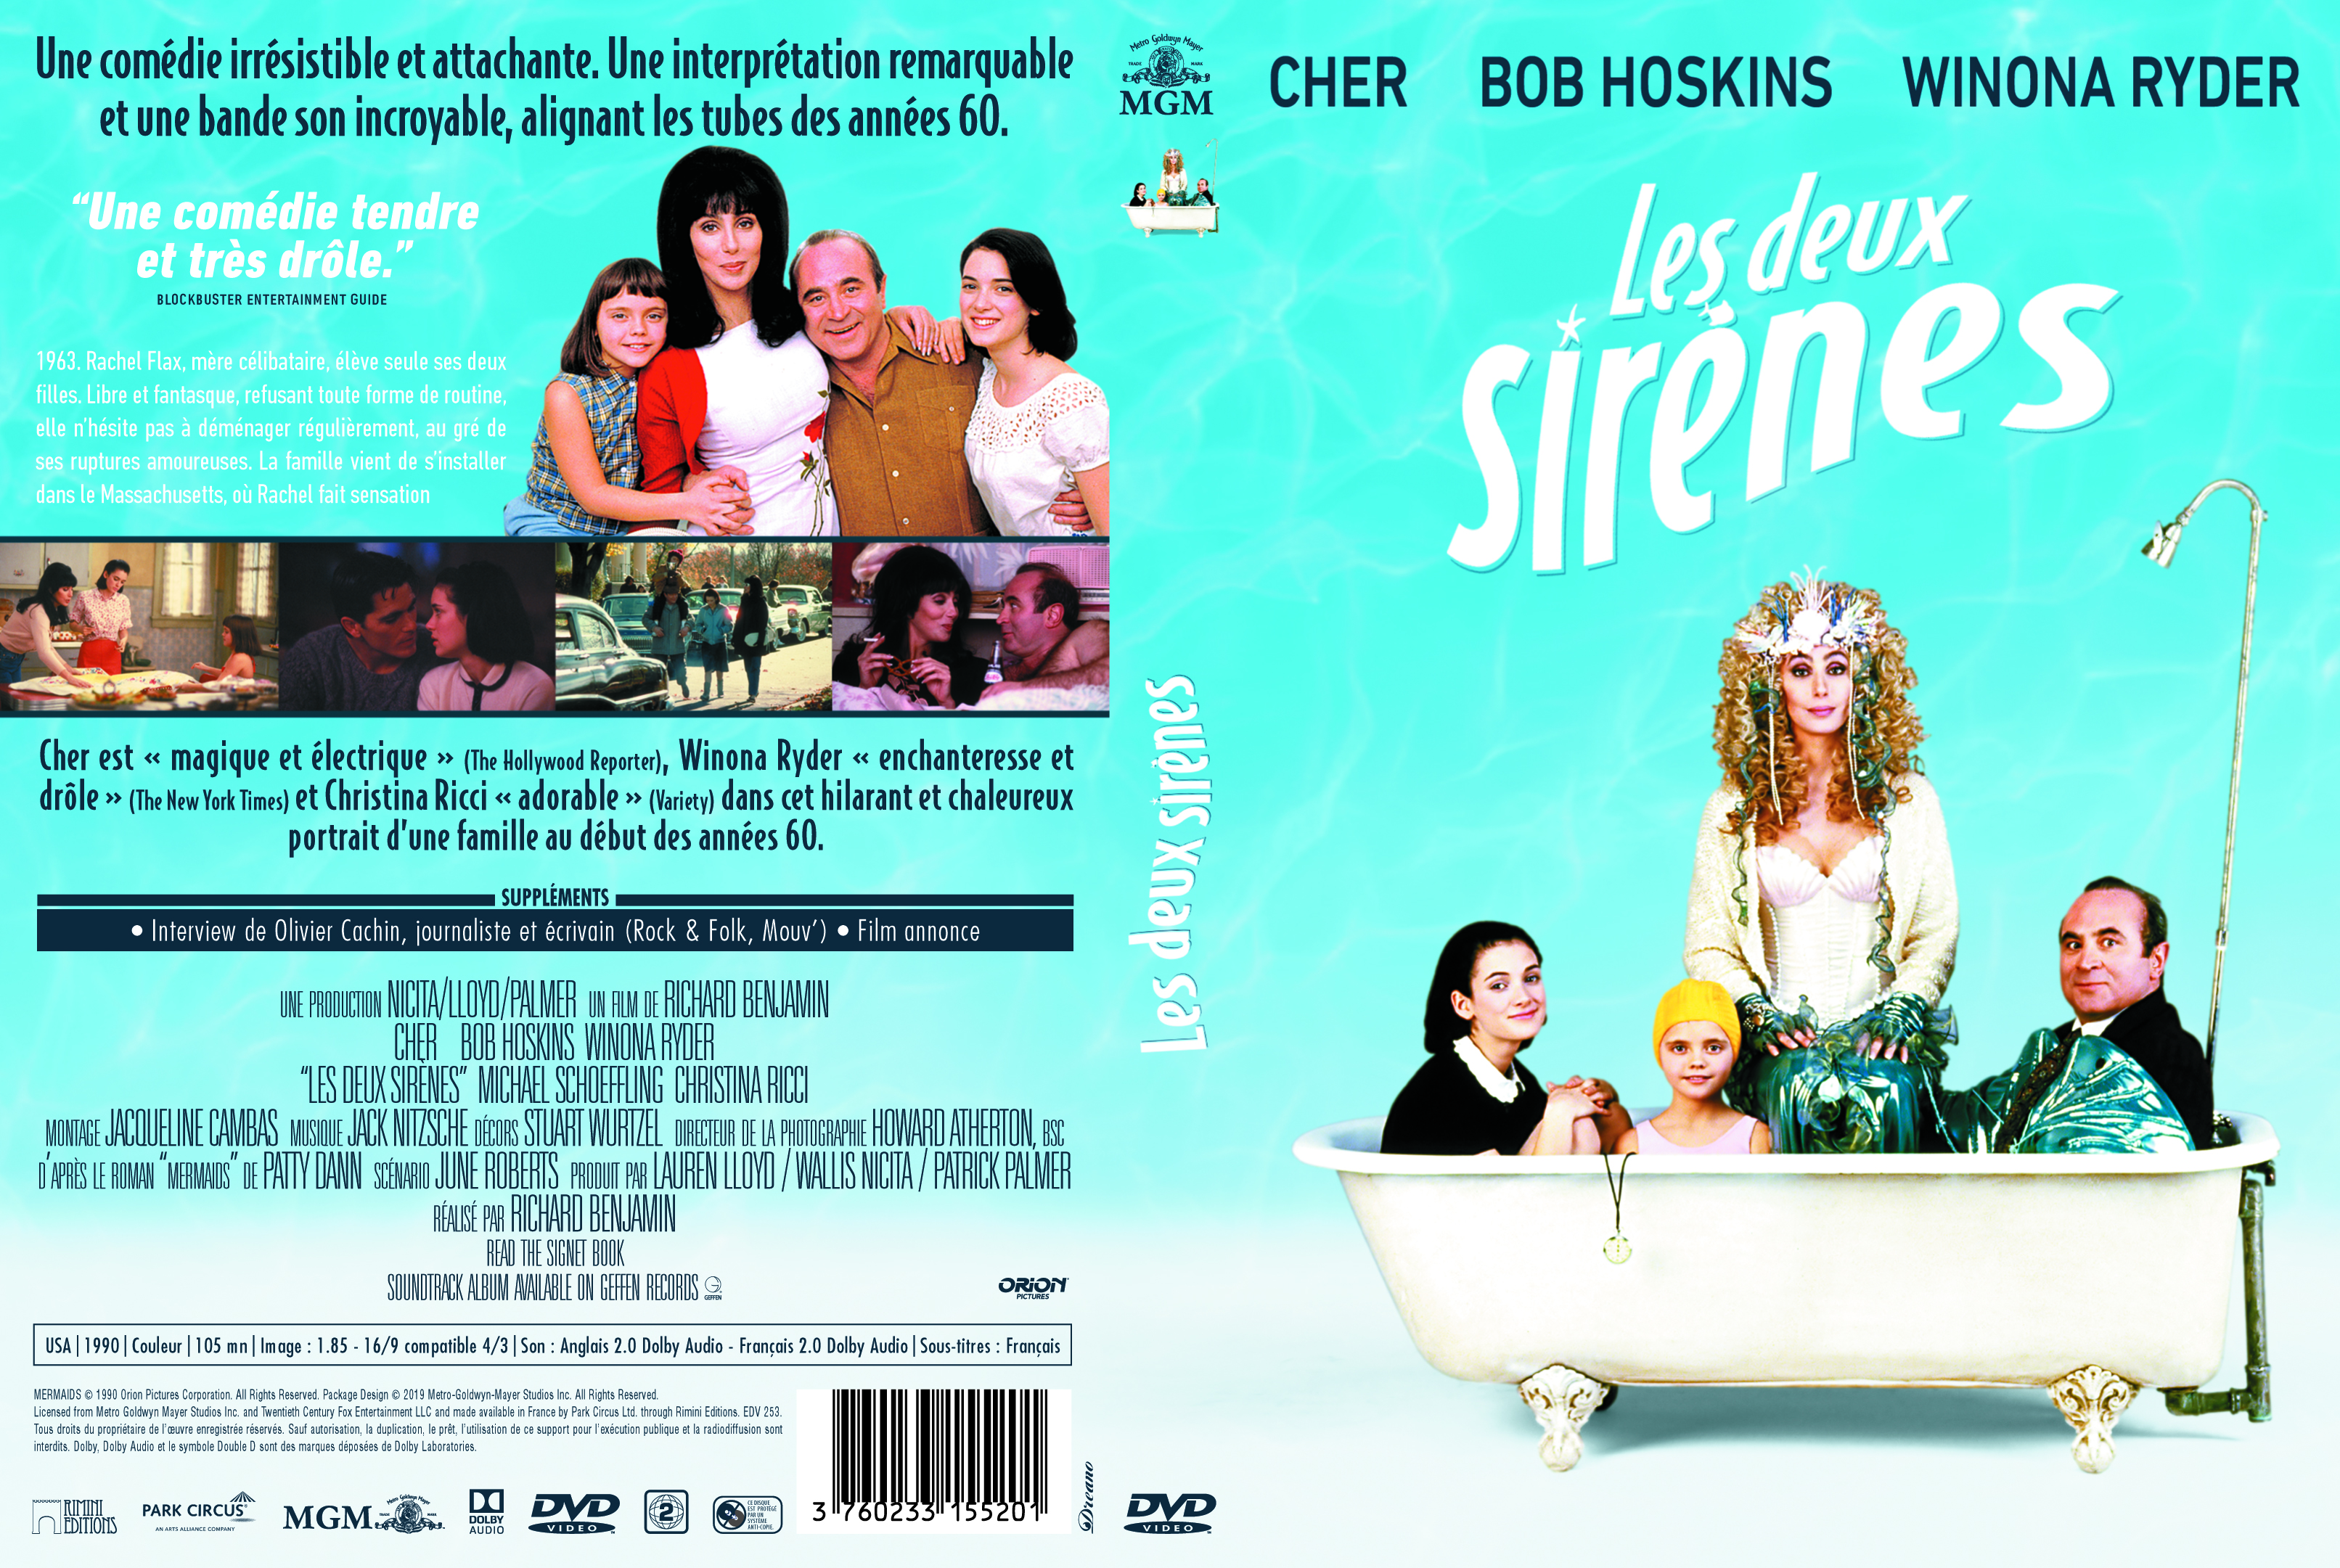 Jaquette DVD Les Deux sirnes v2